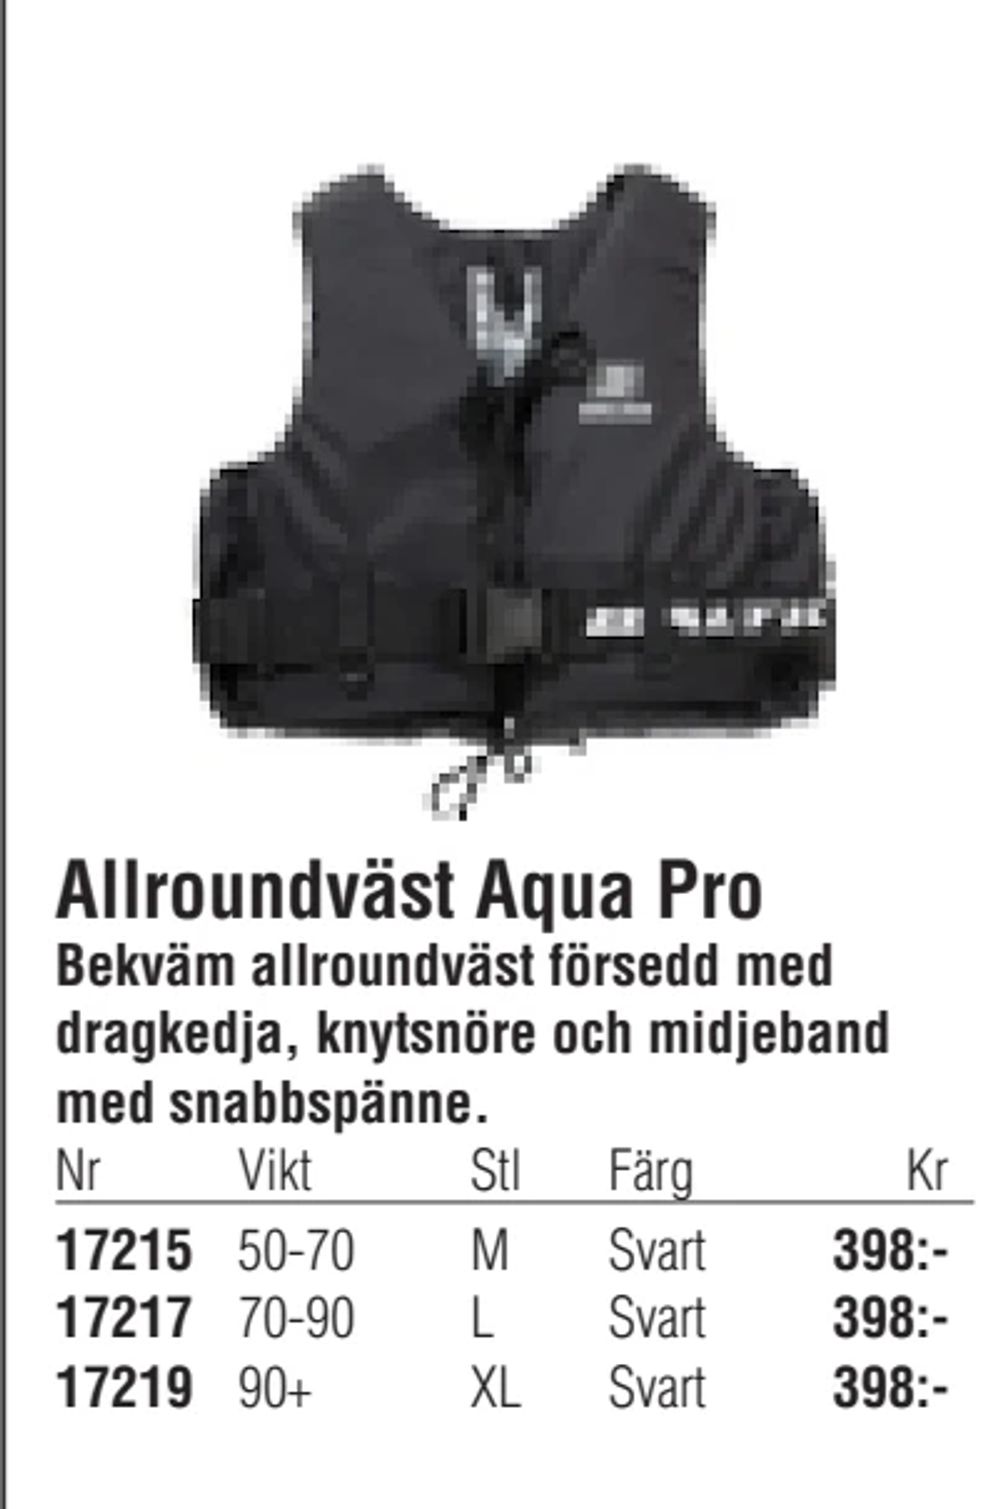 Erbjudanden på Allroundväst Aqua Pro från Erlandsons Brygga för 398 kr